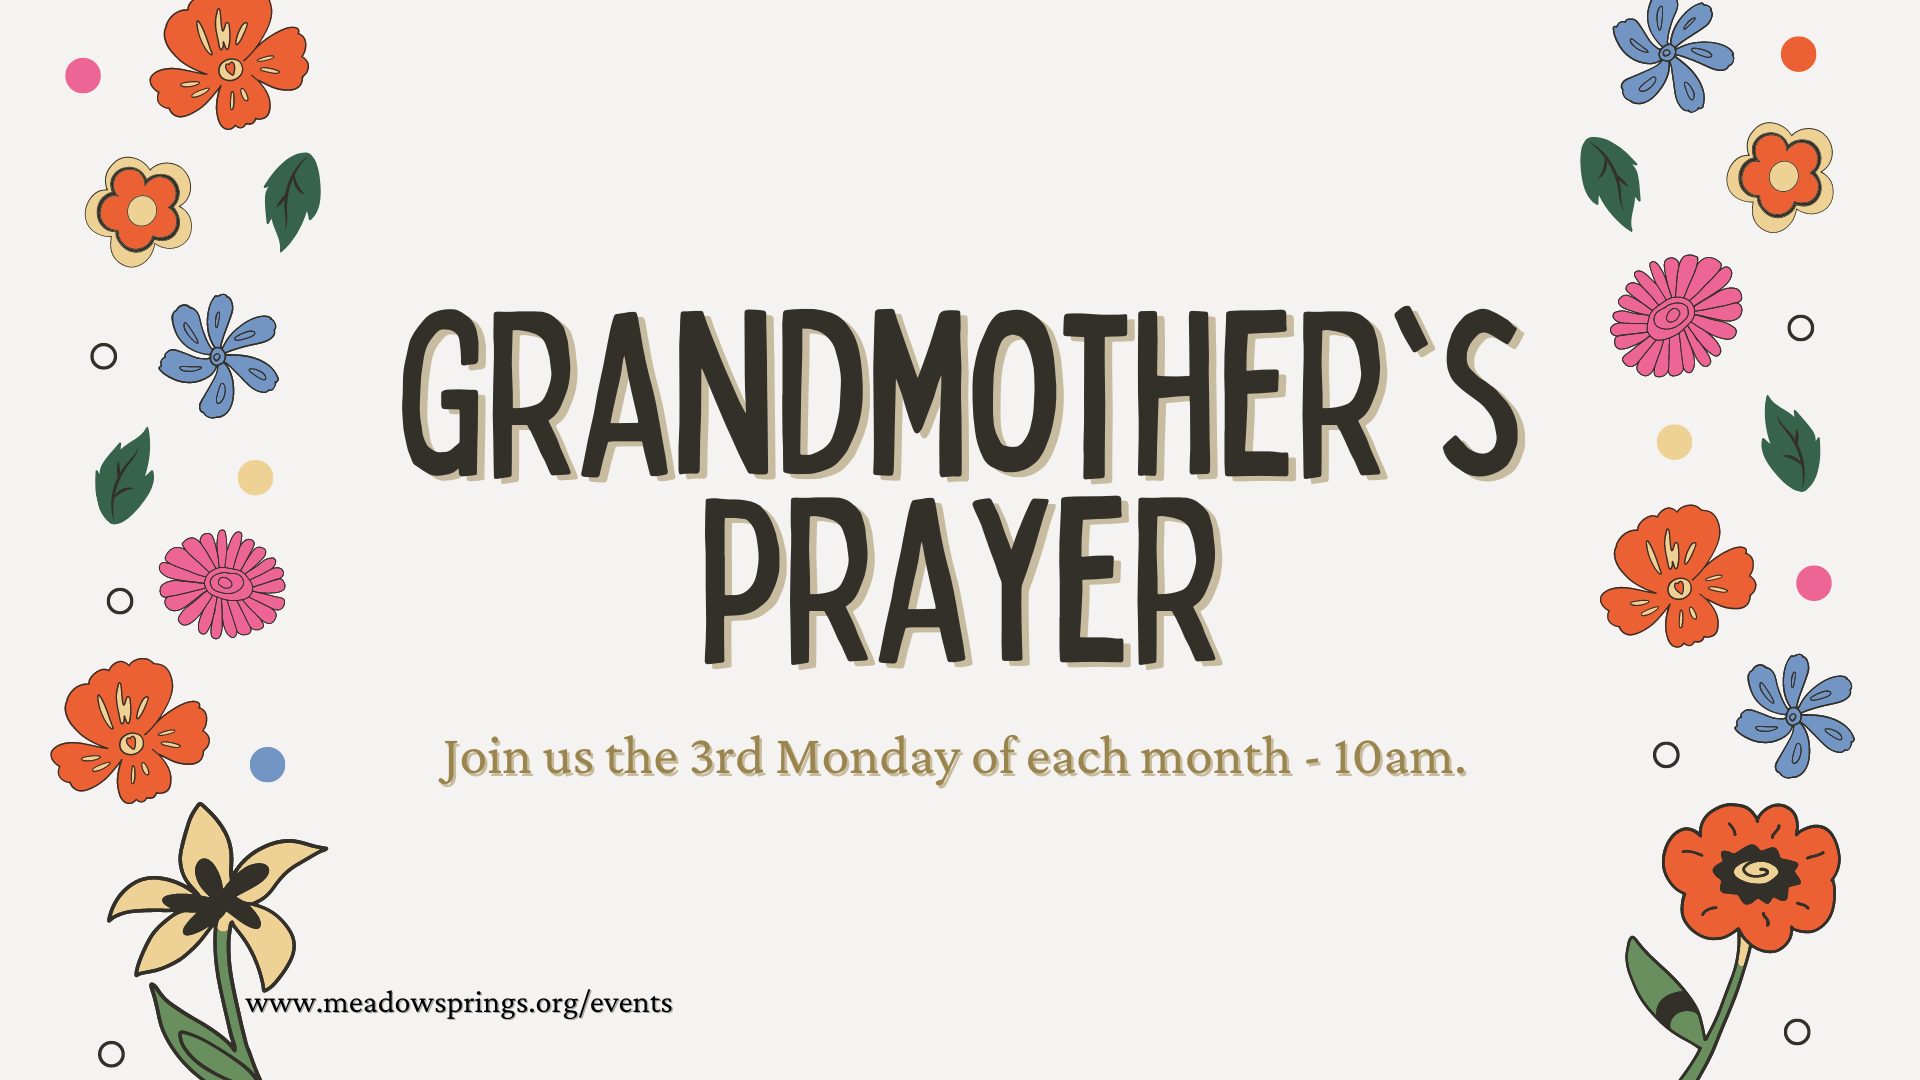 Grandmother's prayer.png